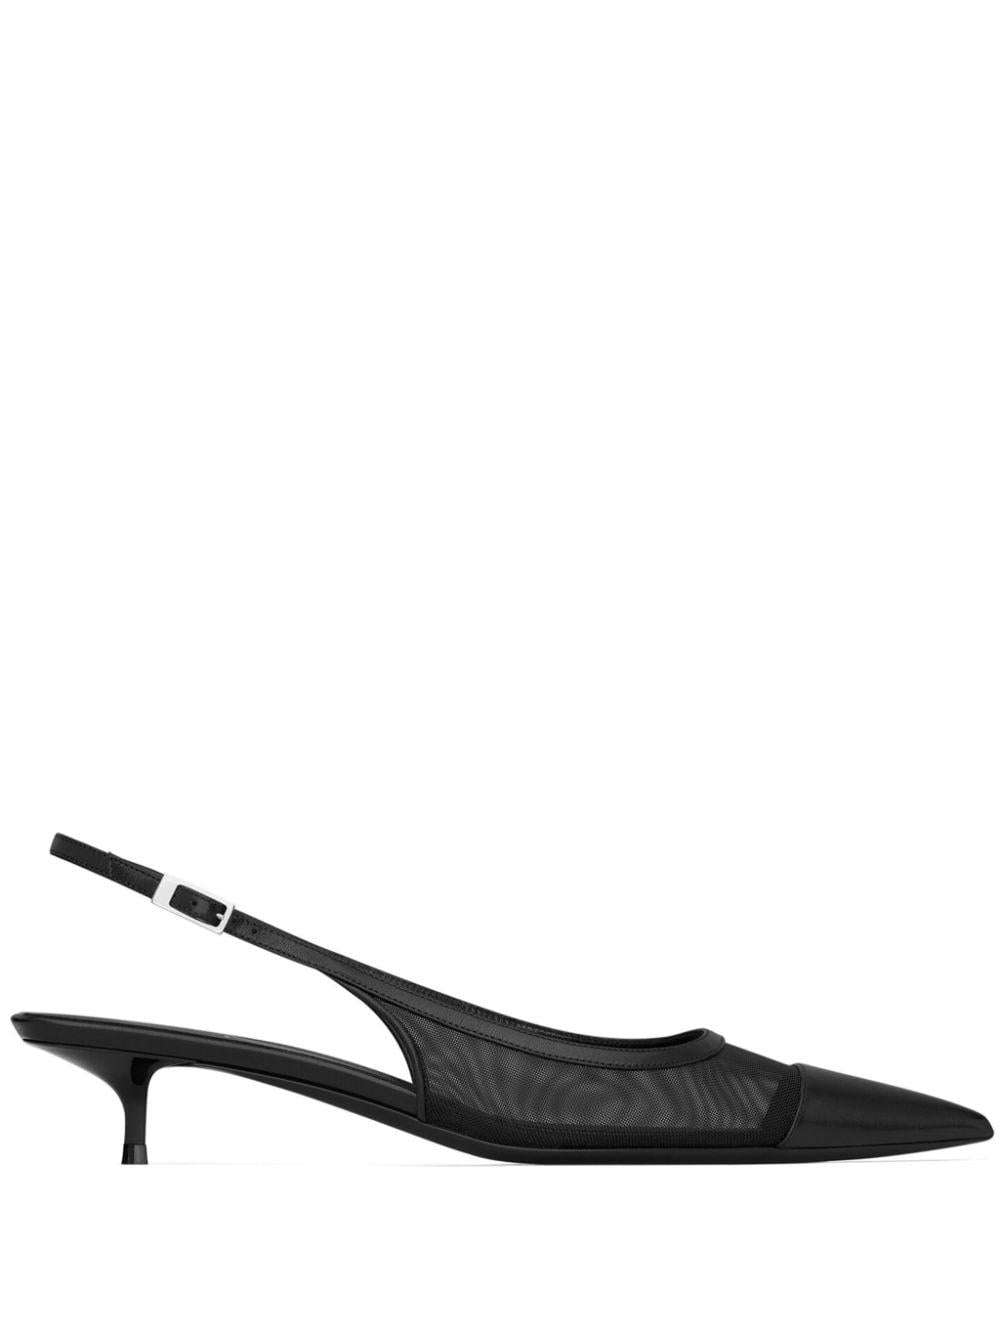 حذاء ذو كعب عالي بلون أسود للنساء من مجموعة ربيع وصيف ٢٤